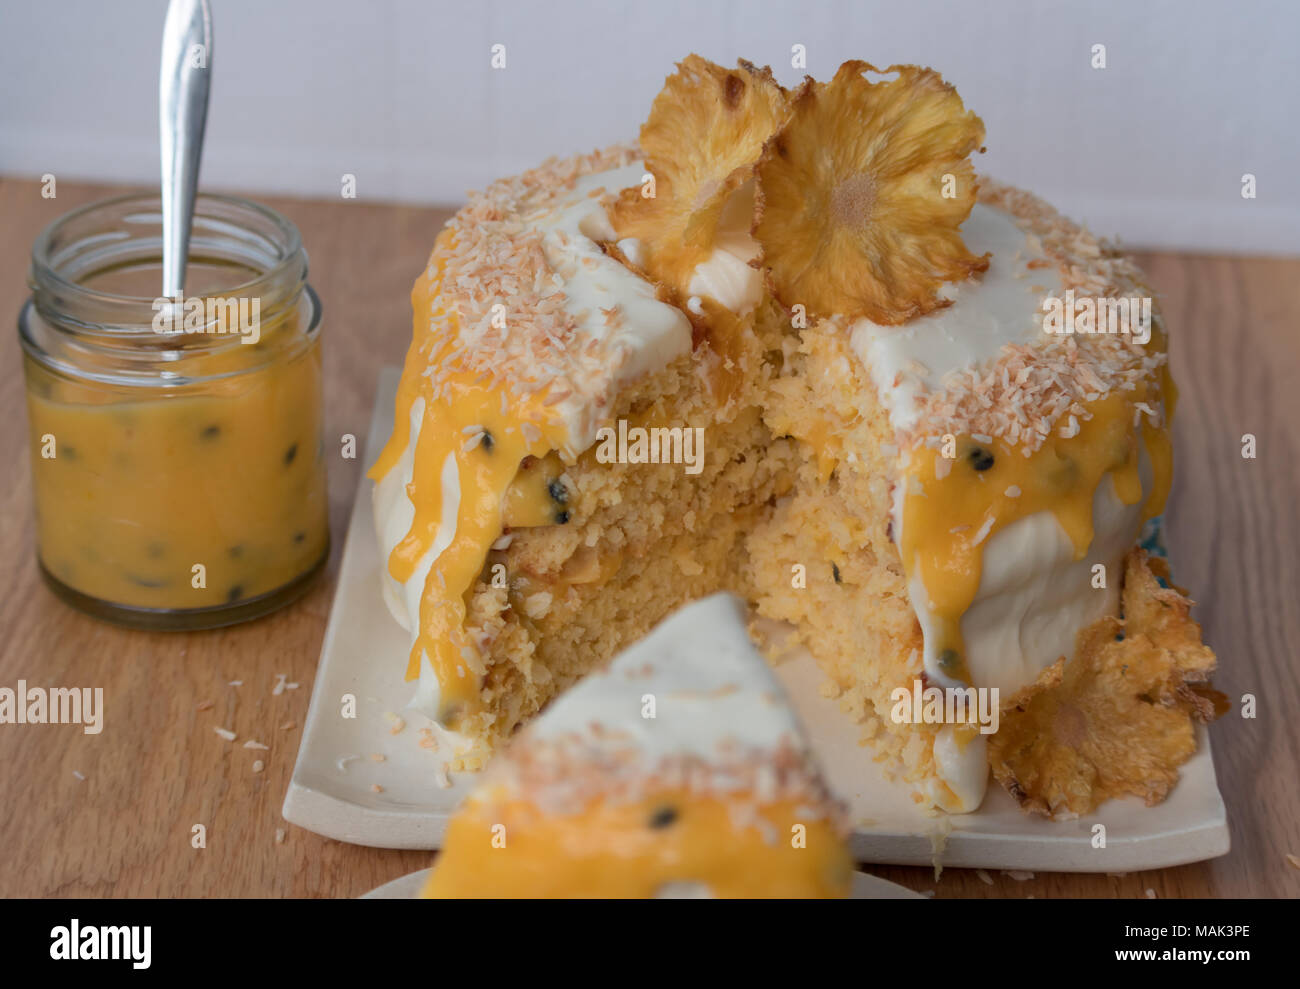 In Scheiben geschnittene Ananas und Kokosnuss Layer Cake mit Passionsfrucht Sauce. Mit Ananas Blumen geschmückt. Stockfoto